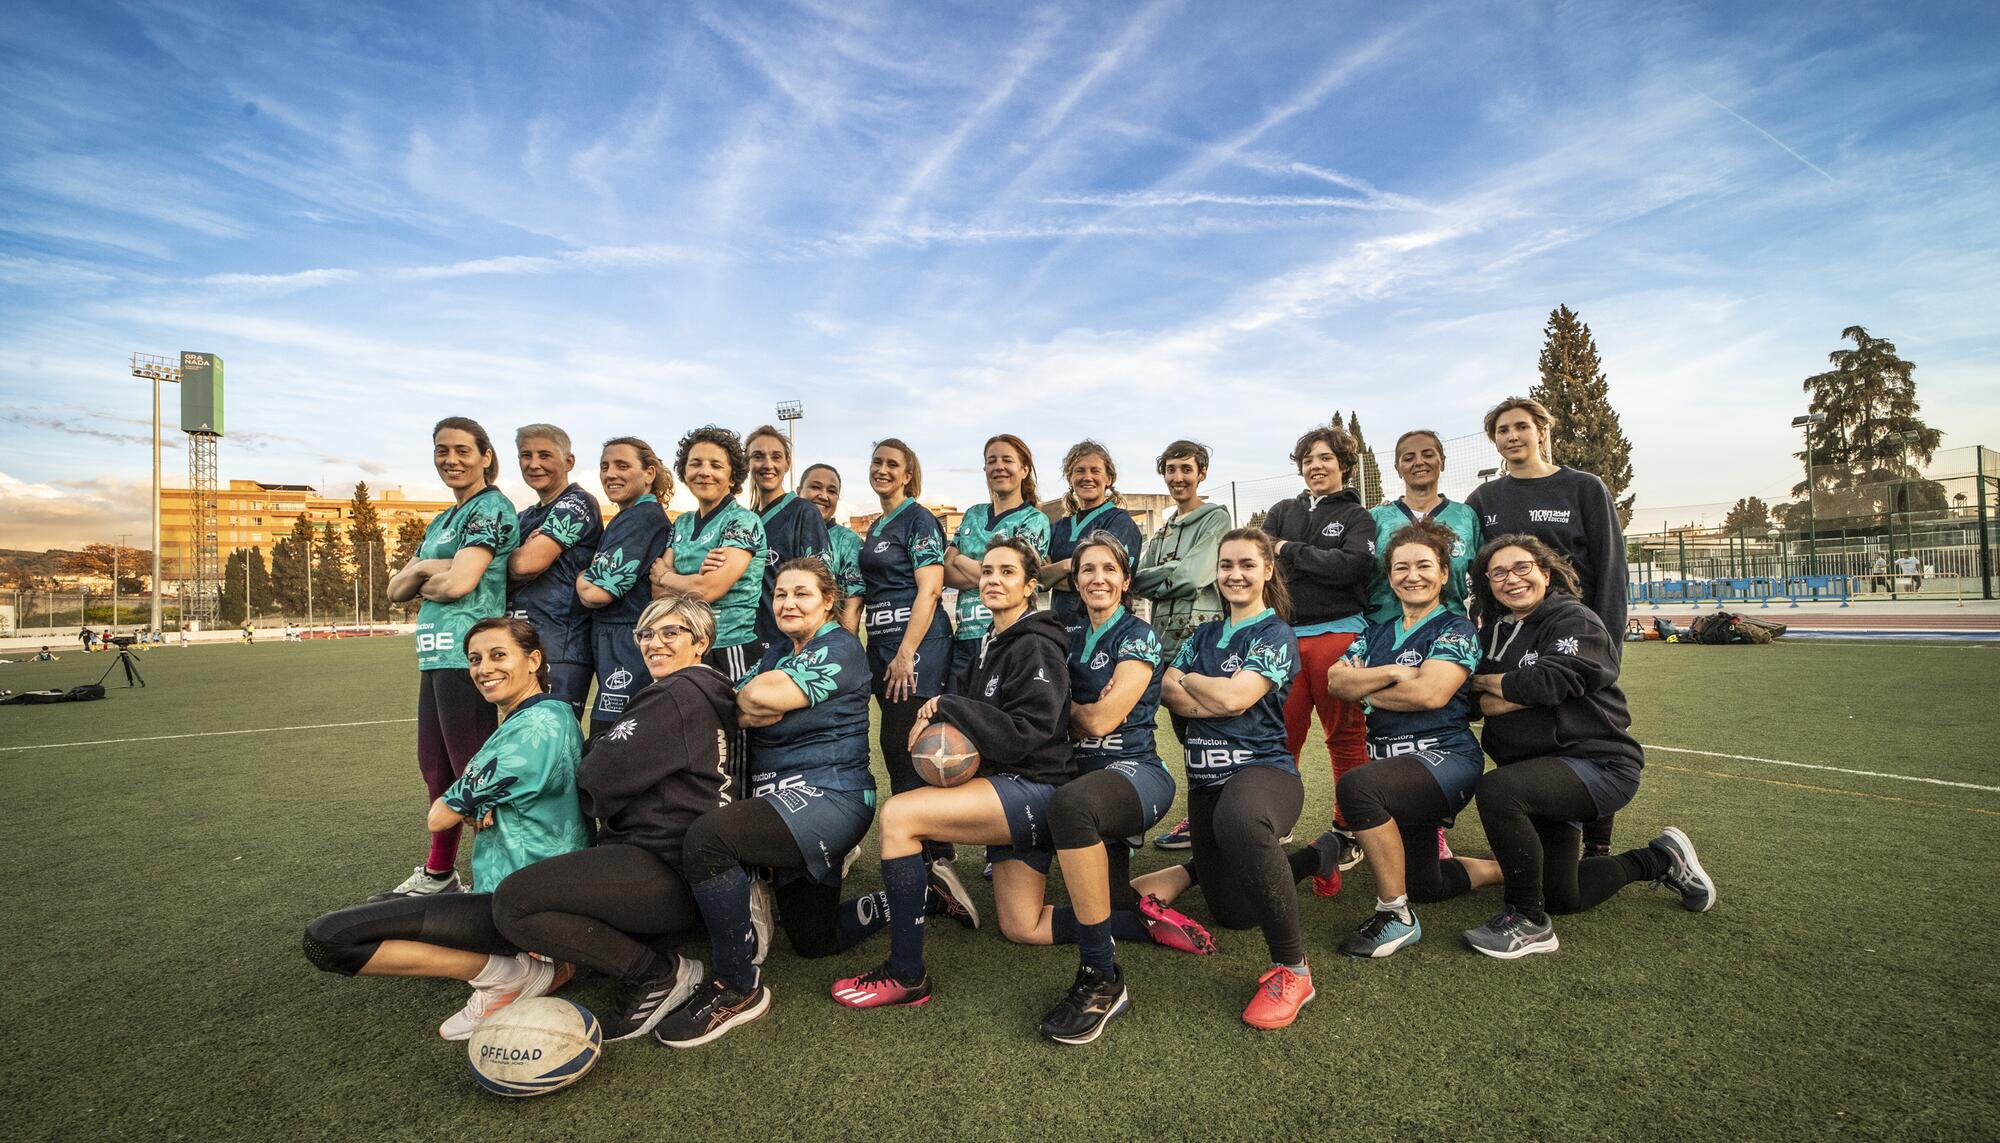 Las Milnoh Granada, un club de rugby femenino +35 creado y gestionado por mujeres - 1_grupo